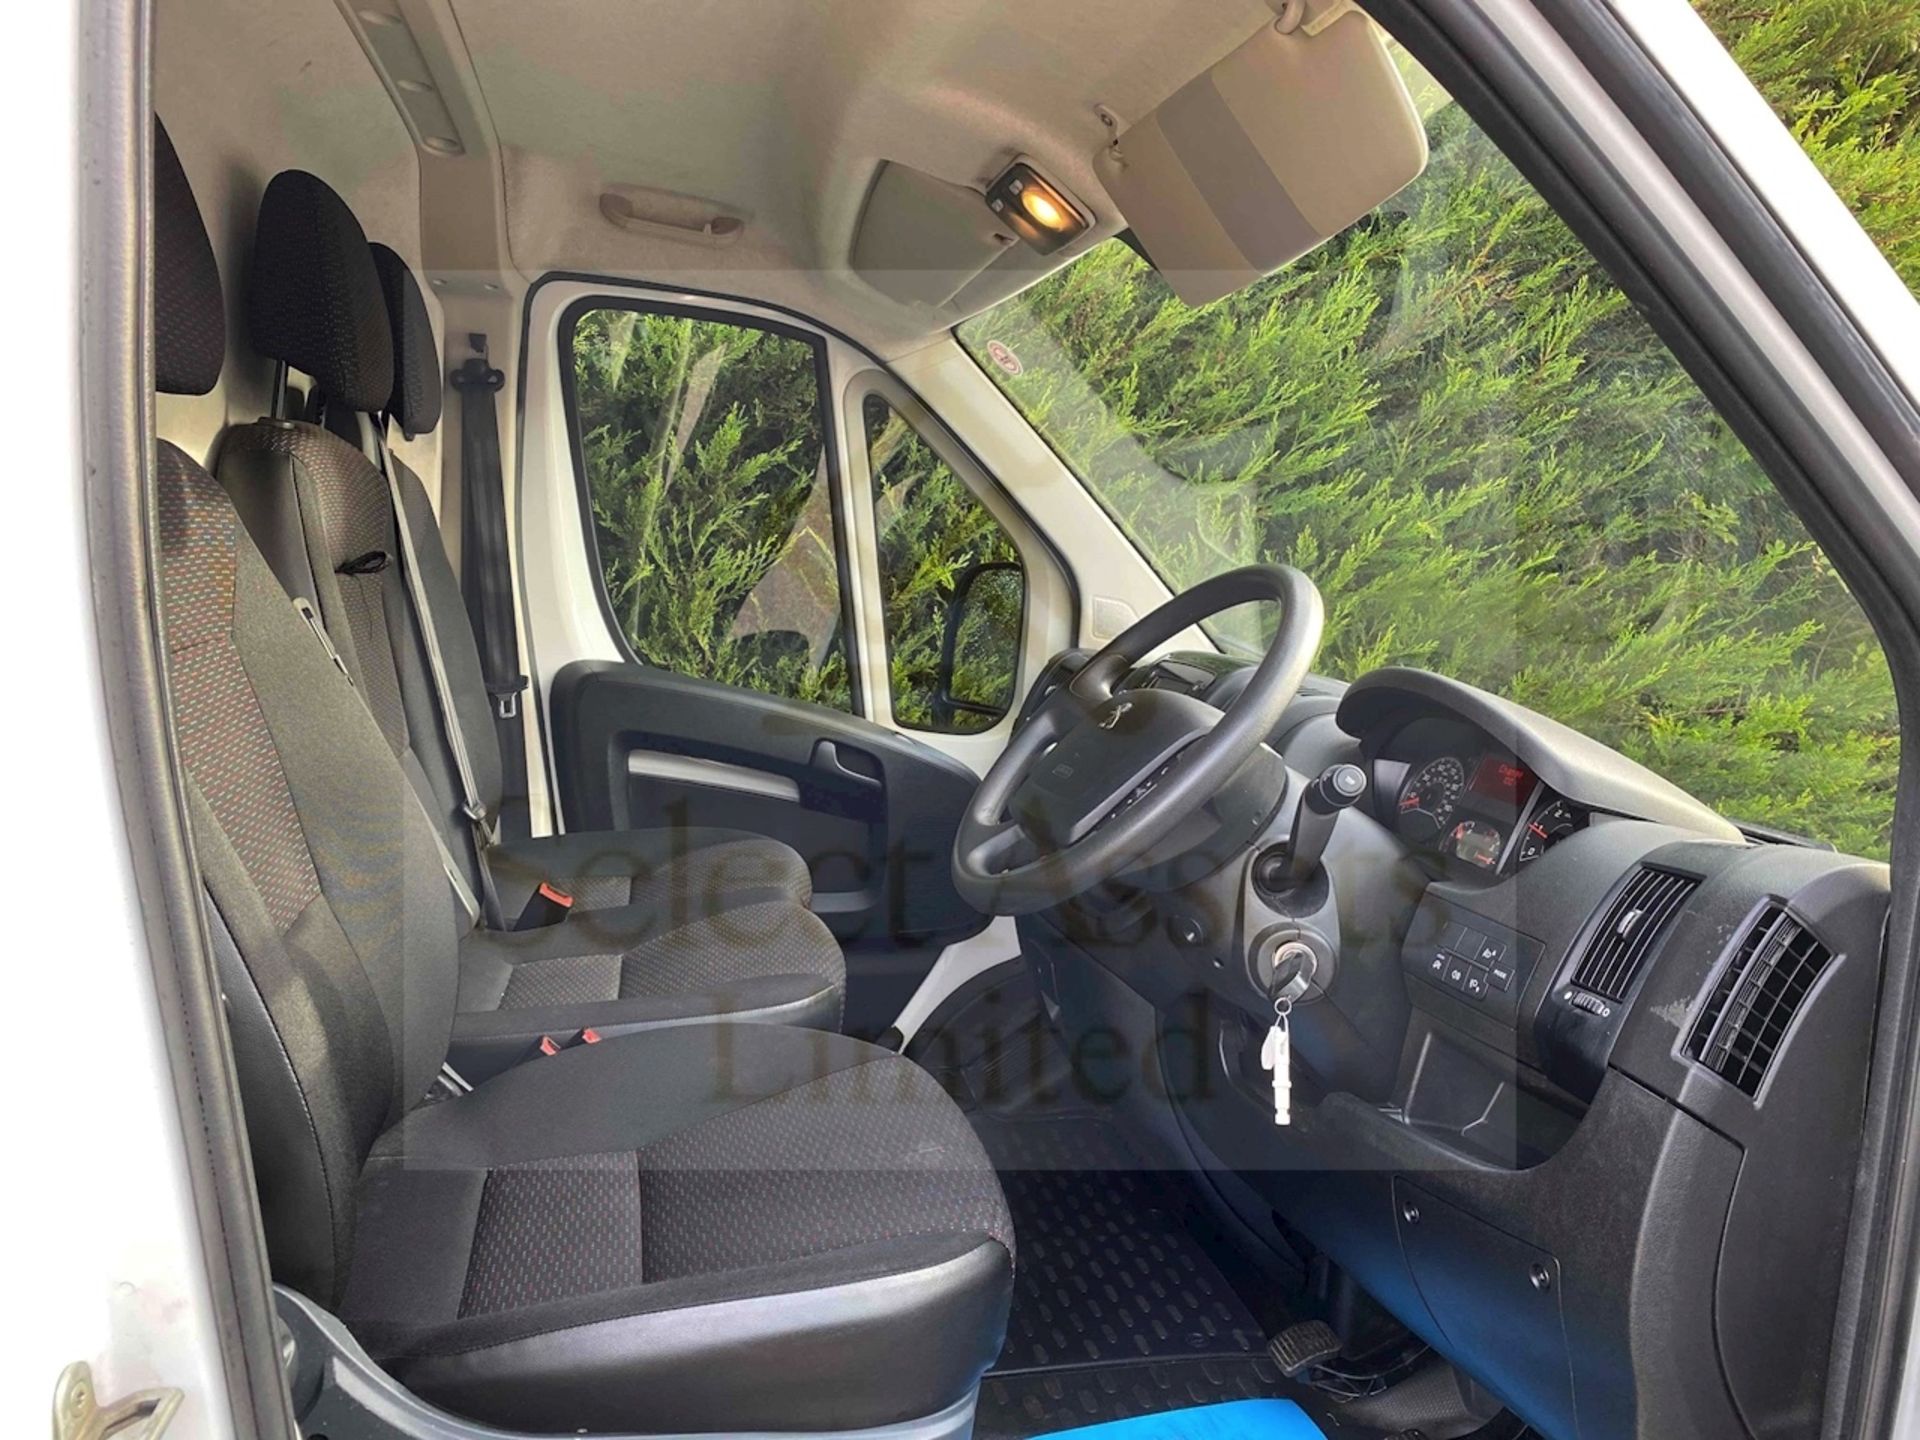 (Reserve Met) Peugeot Boxer 435 *Professional* L4 XLWB Hi-Roof Panel Van (2019) 2.0 Blue Hdi - Image 12 of 12